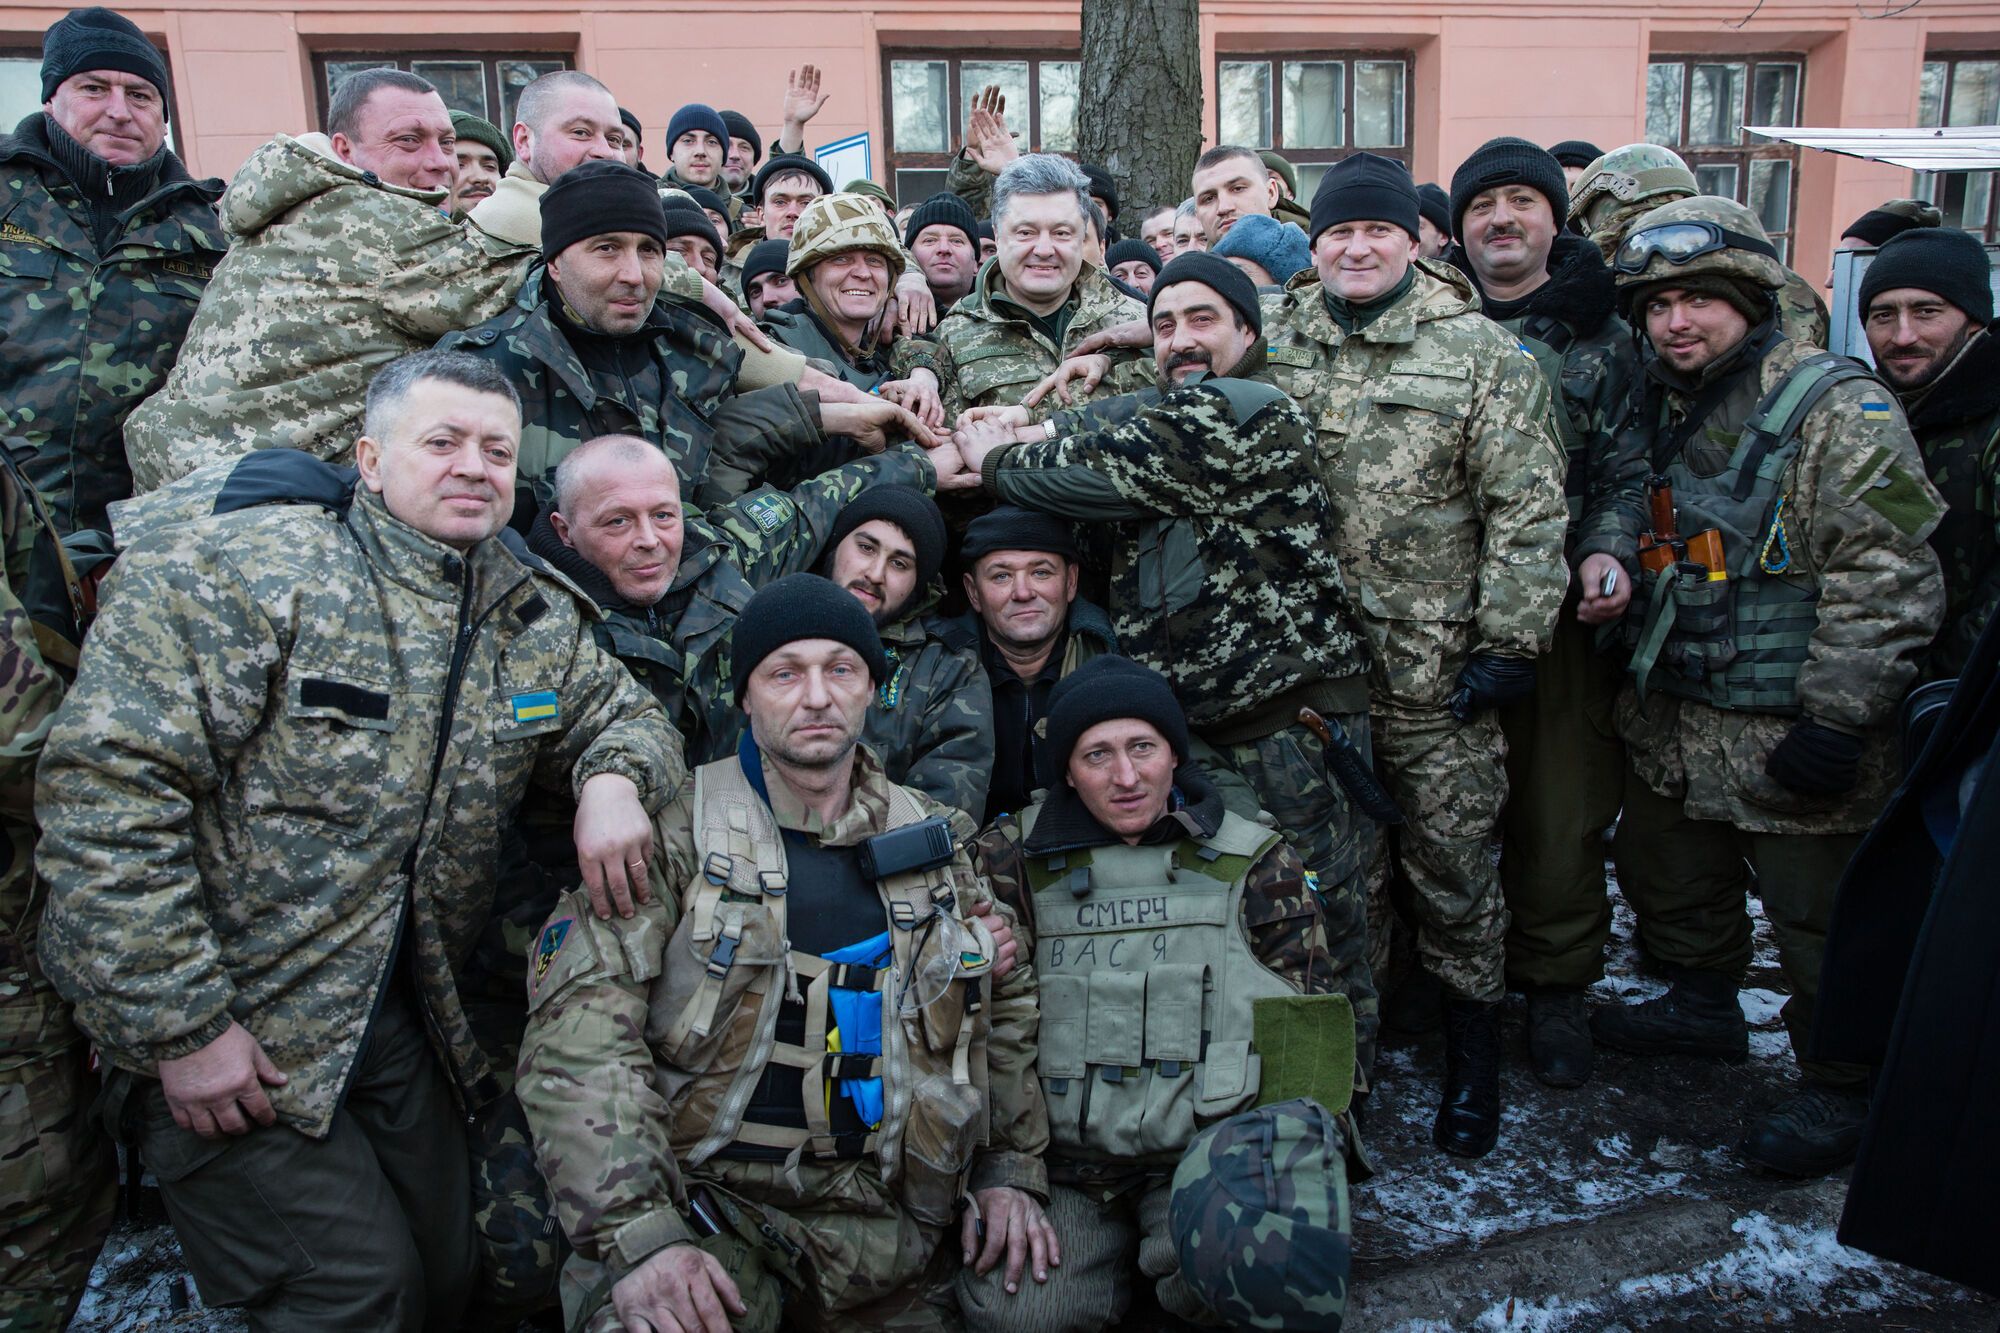 Зона АТО, Артемовск, с бойцами из Дебальцево. 18.02.2015